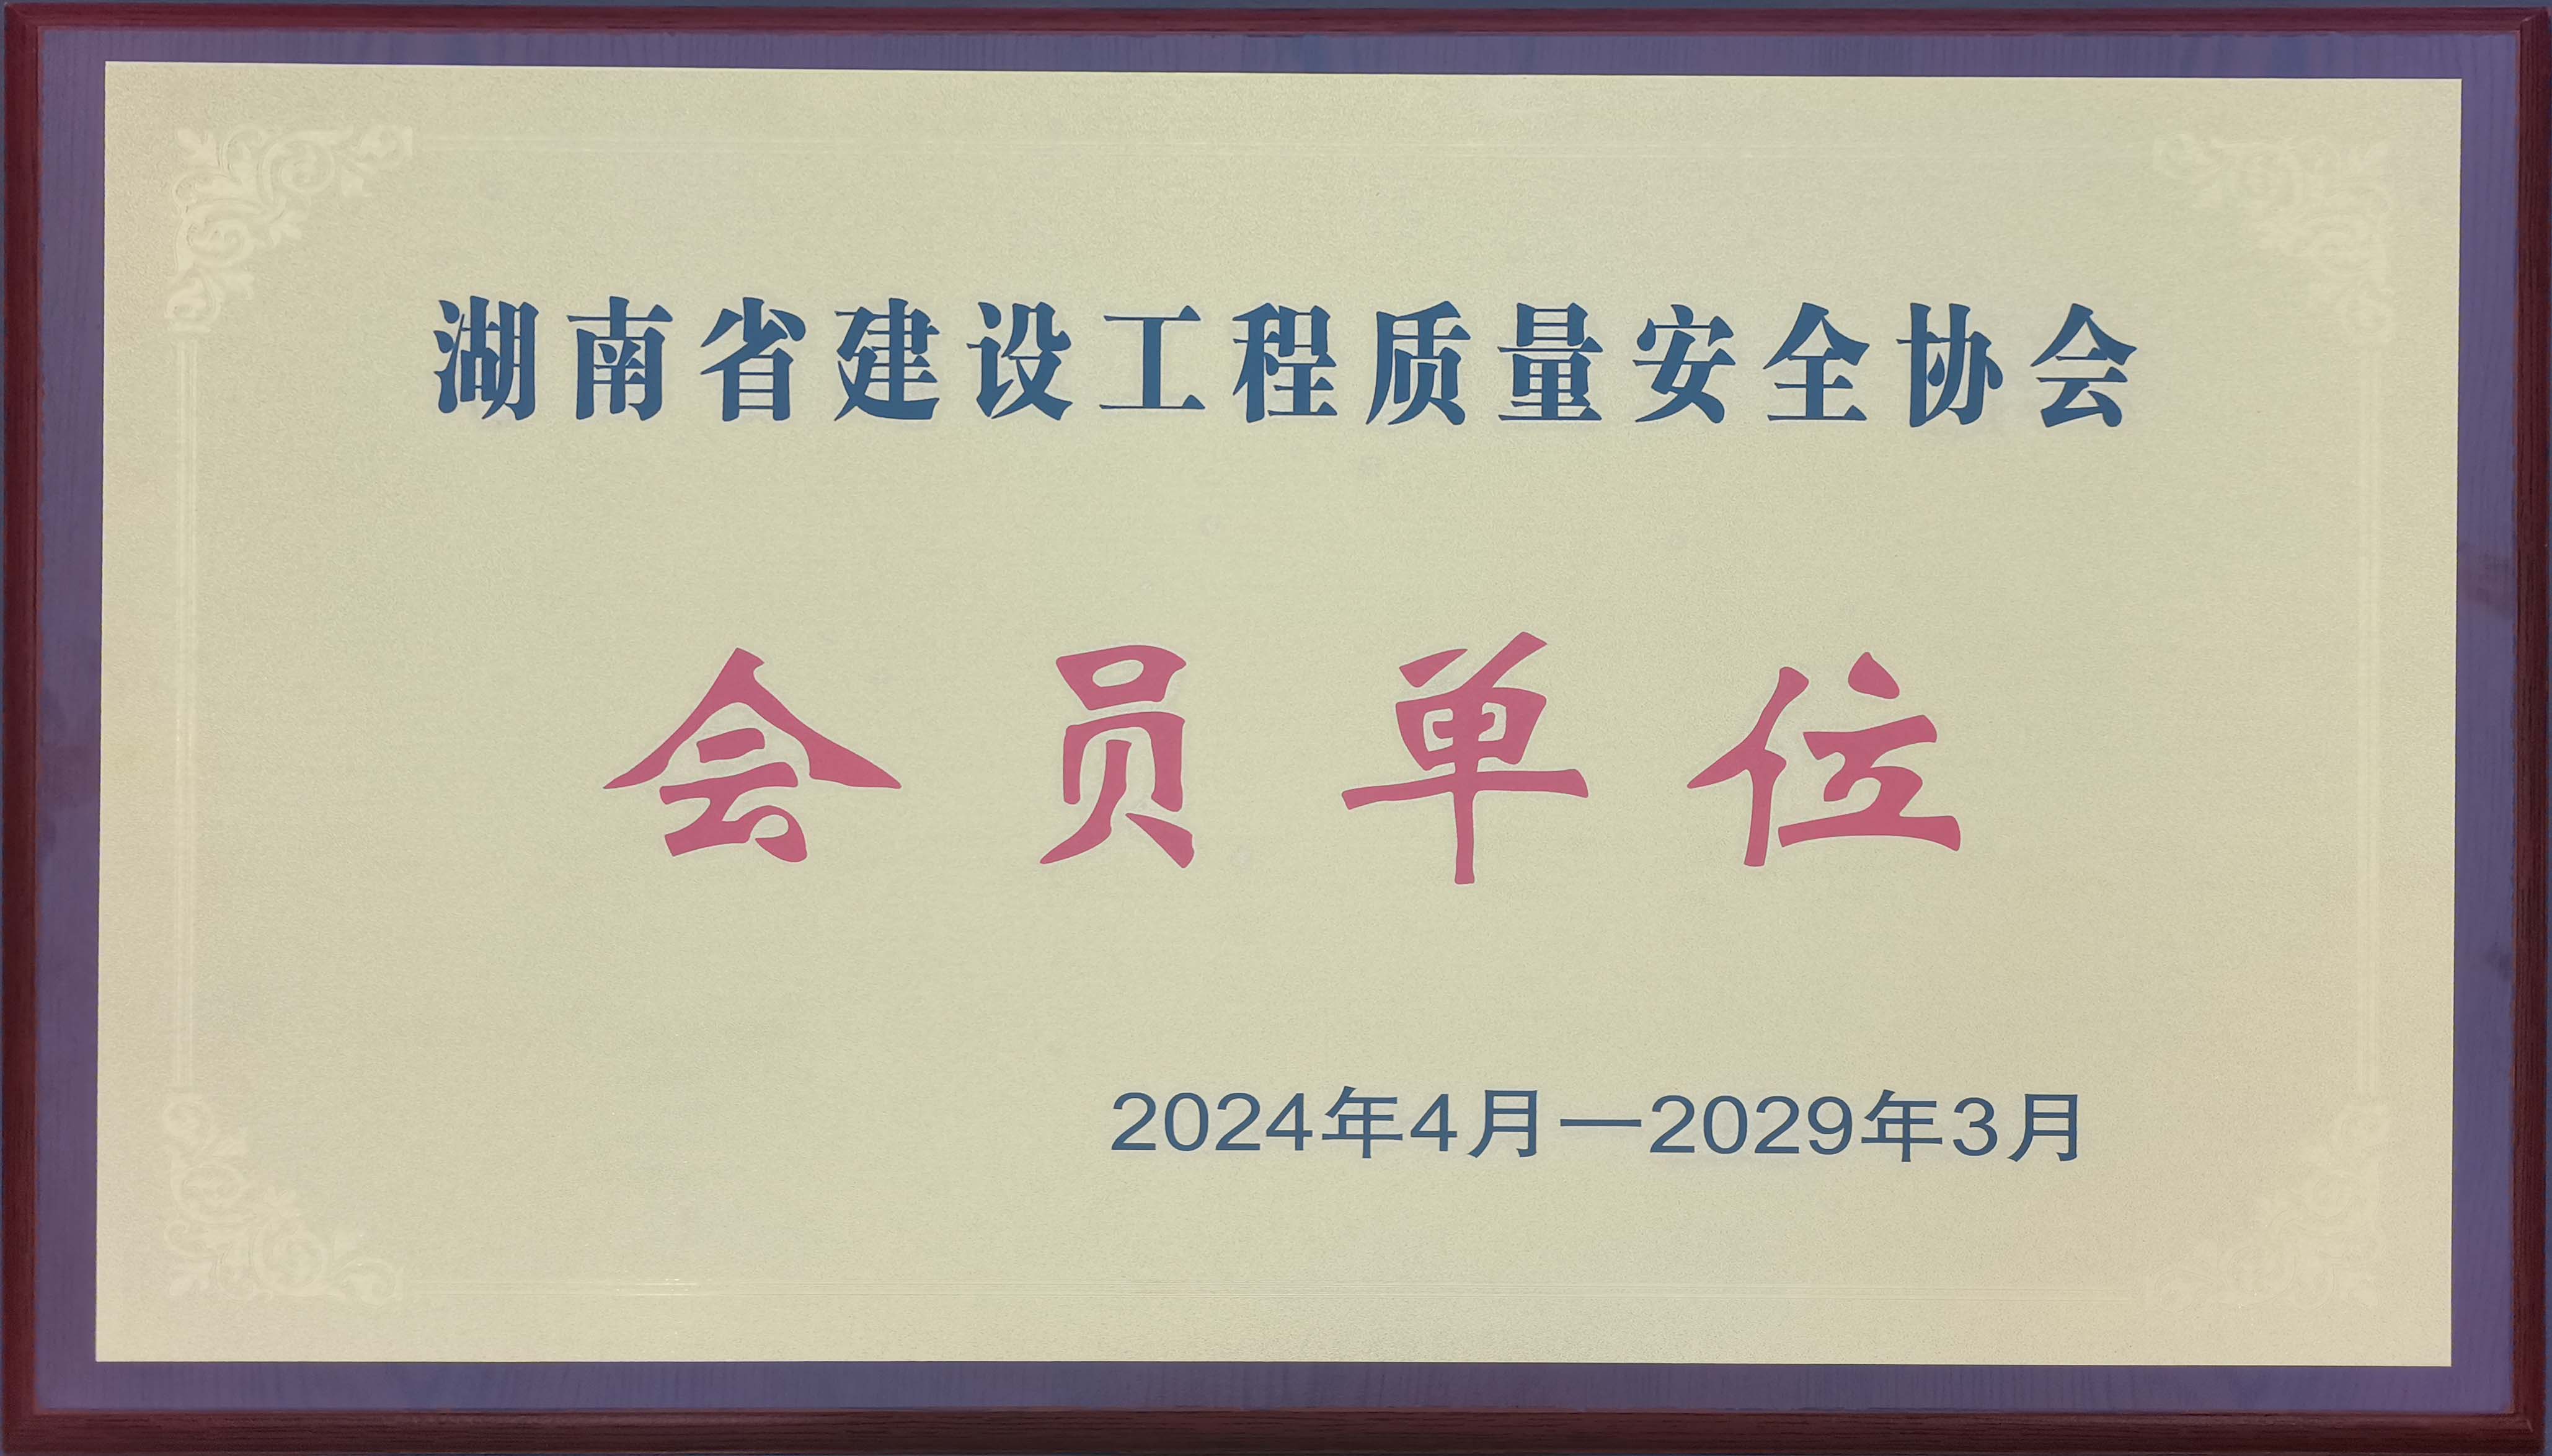 湖南省建设工程质量安全协会会员单位